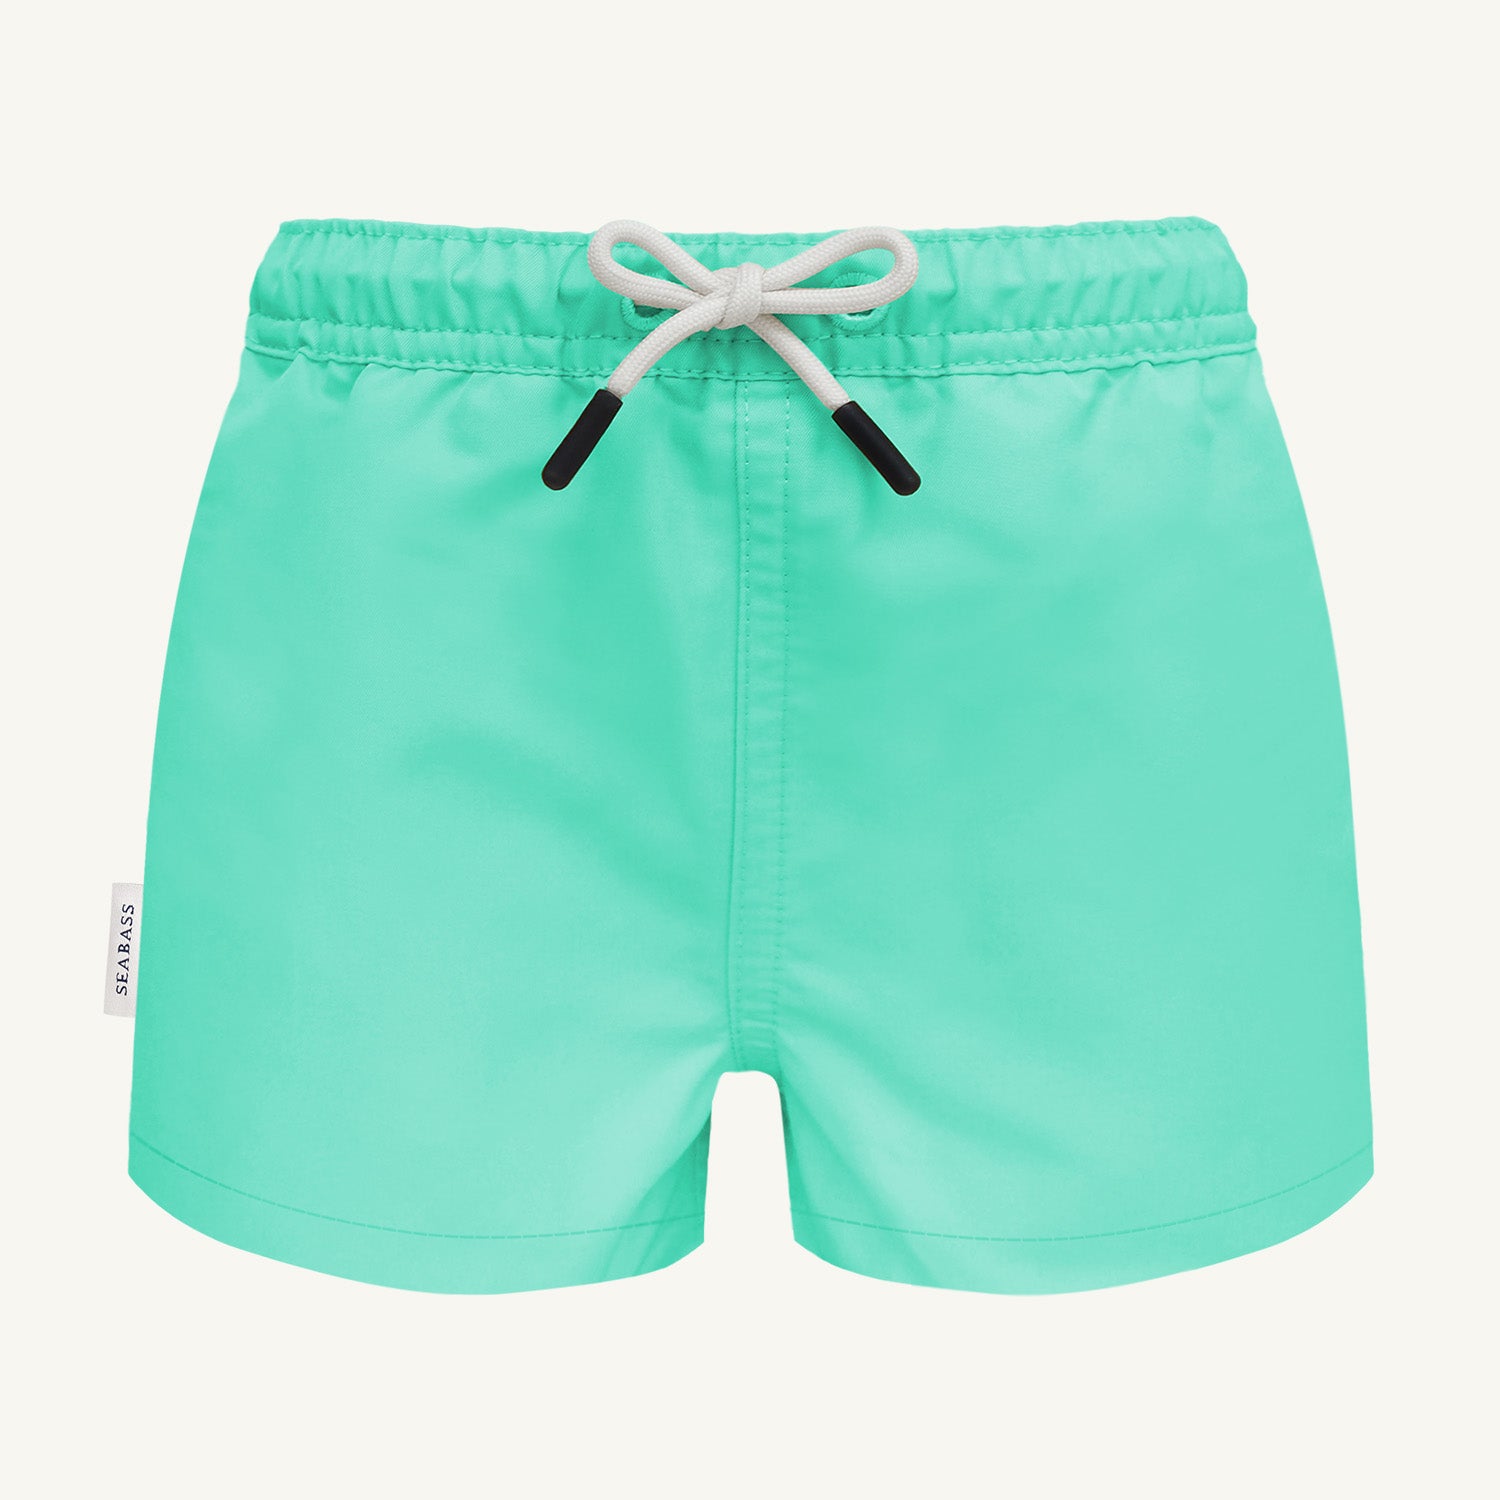 Männer UV Badeshort Mintgrün - einfarbig